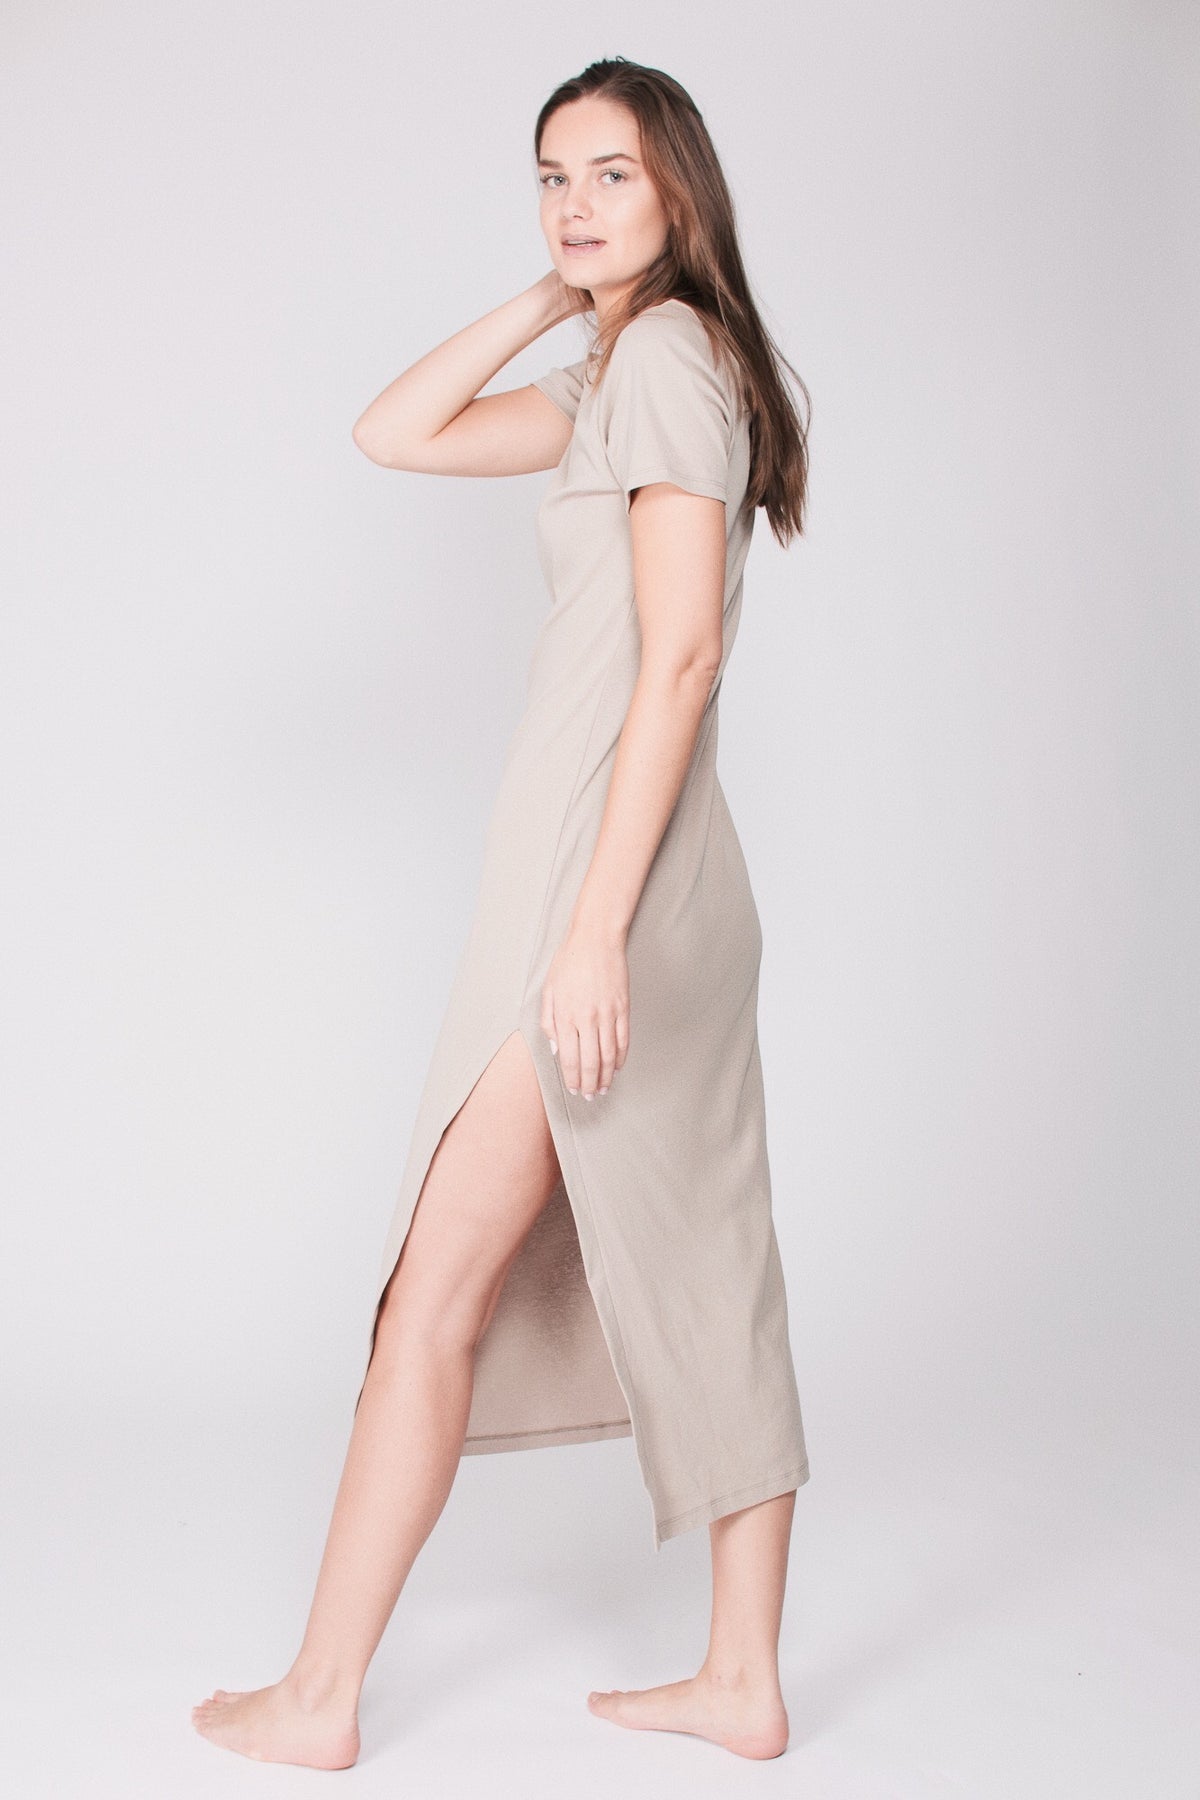 The T-dress : Organic Cotton - Beige - AWAN - Loungewear - VILLOID.no